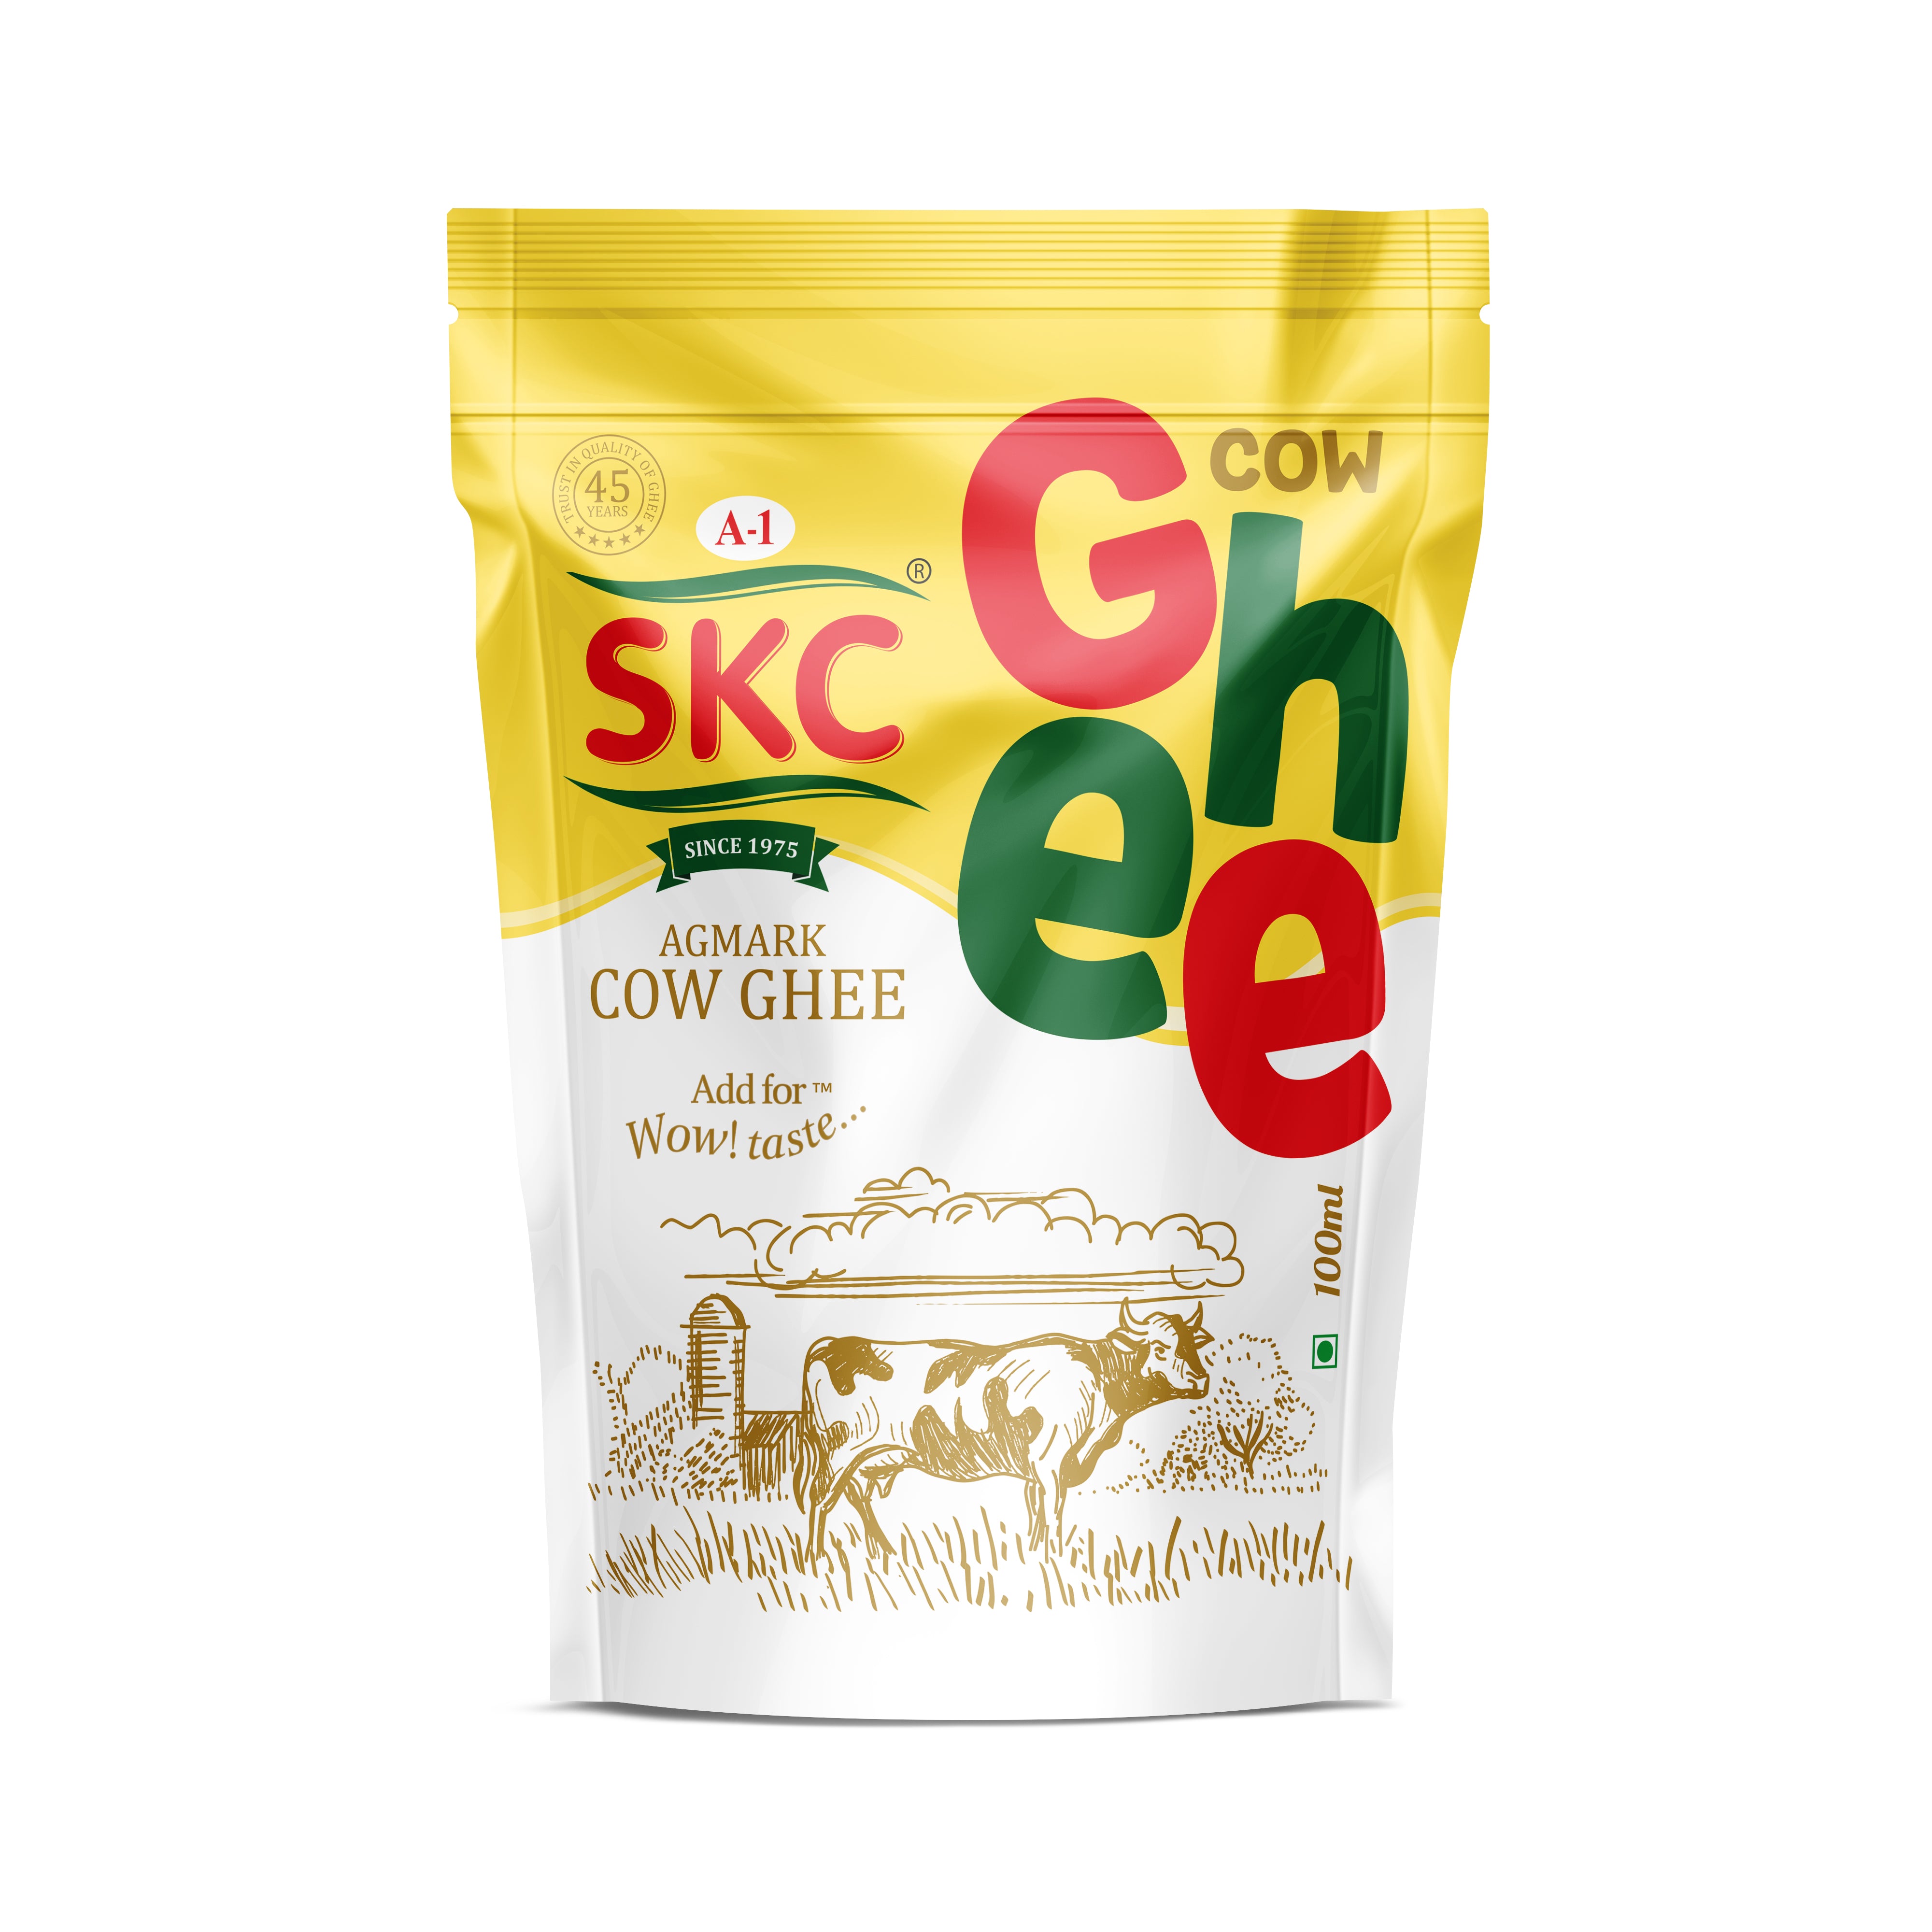 A1 SKC Pure Cow Ghee 1 litre Pouch